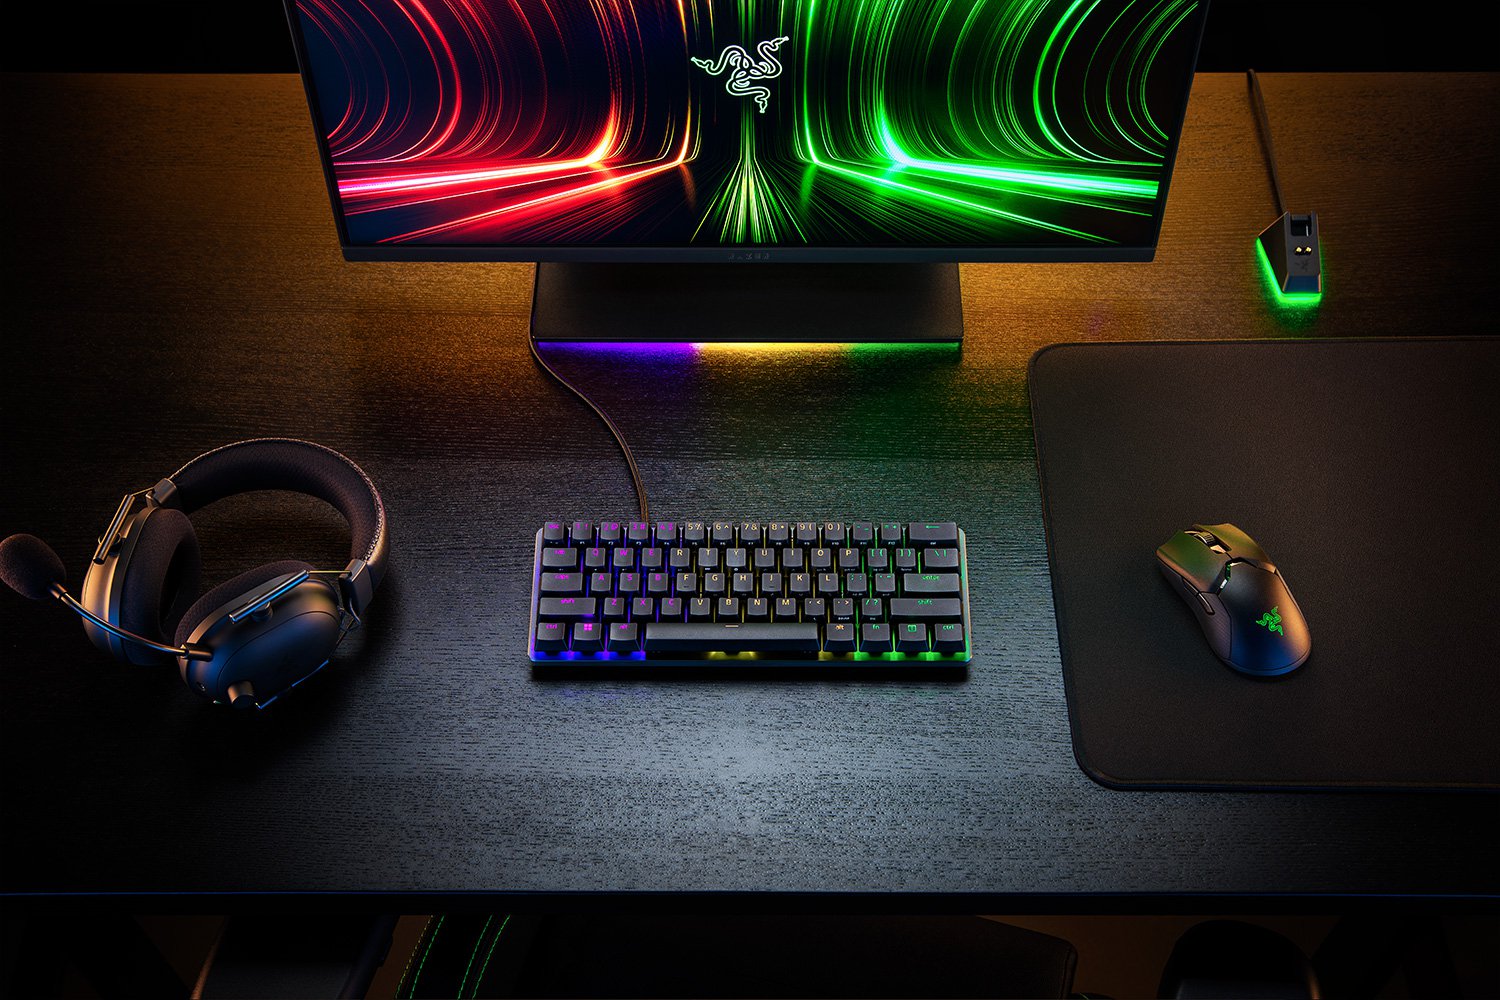 60% Analog Gaming Keyboard - Razer Huntsman Mini Analog ⌨️